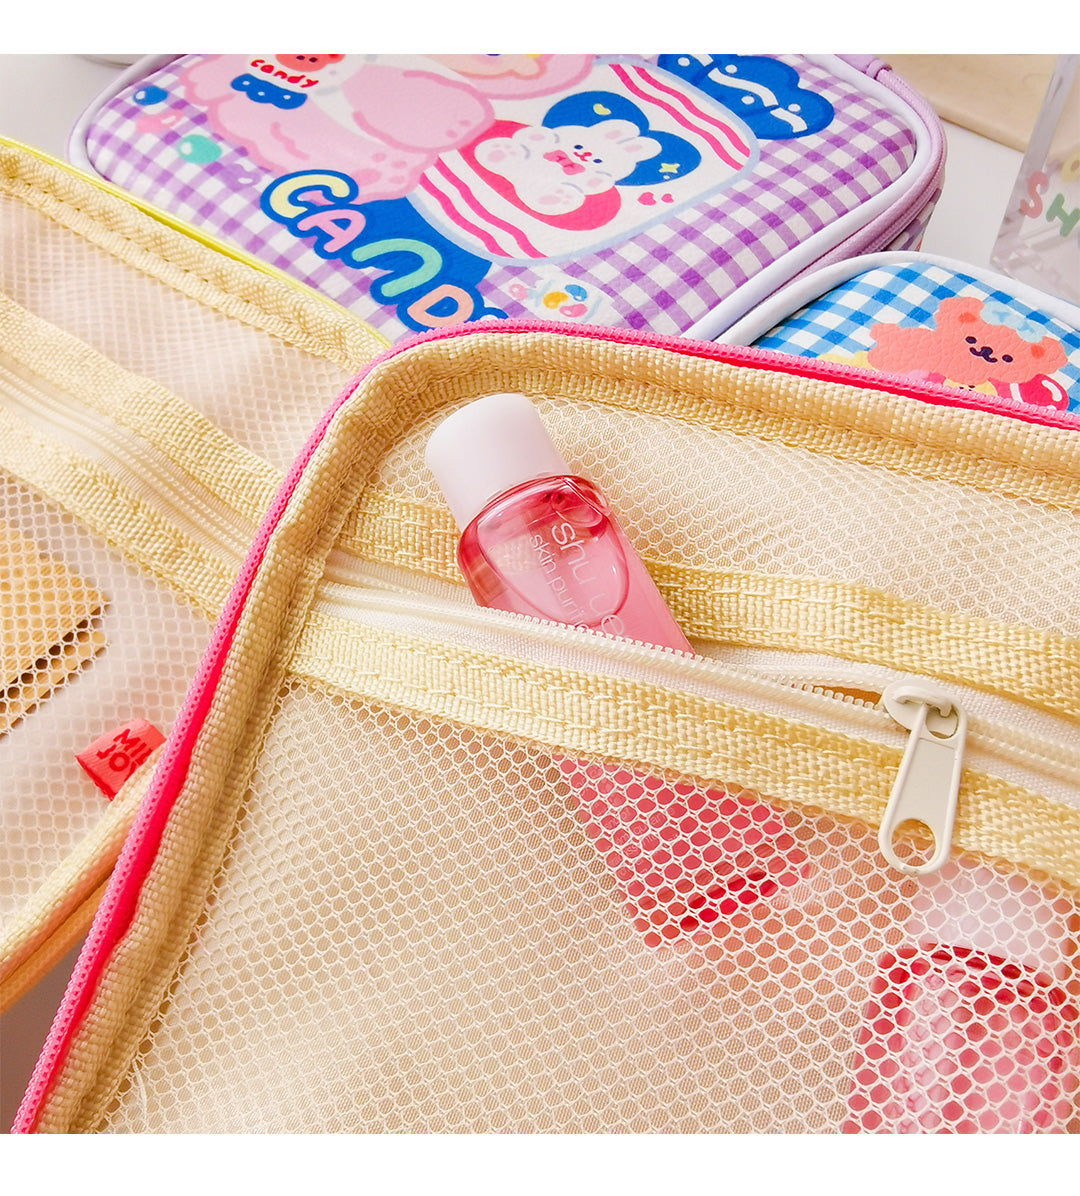 BlingKiyo Lollipop Girl Makeup Bags